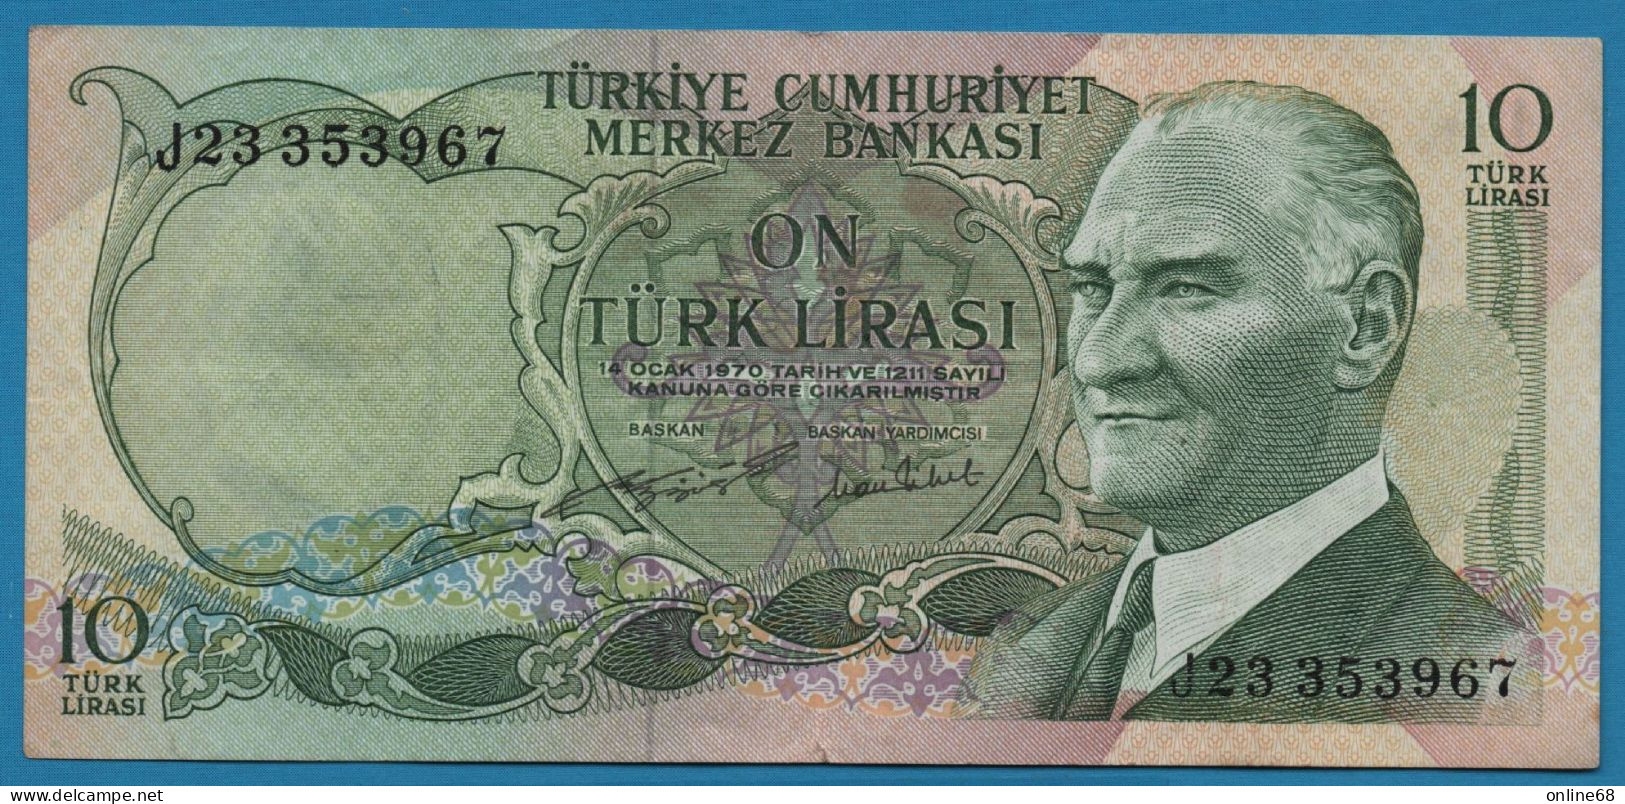 TURKEY 10 LIRASI L. 1970 # J23 353967 P# 186 Atatürk - Turchia